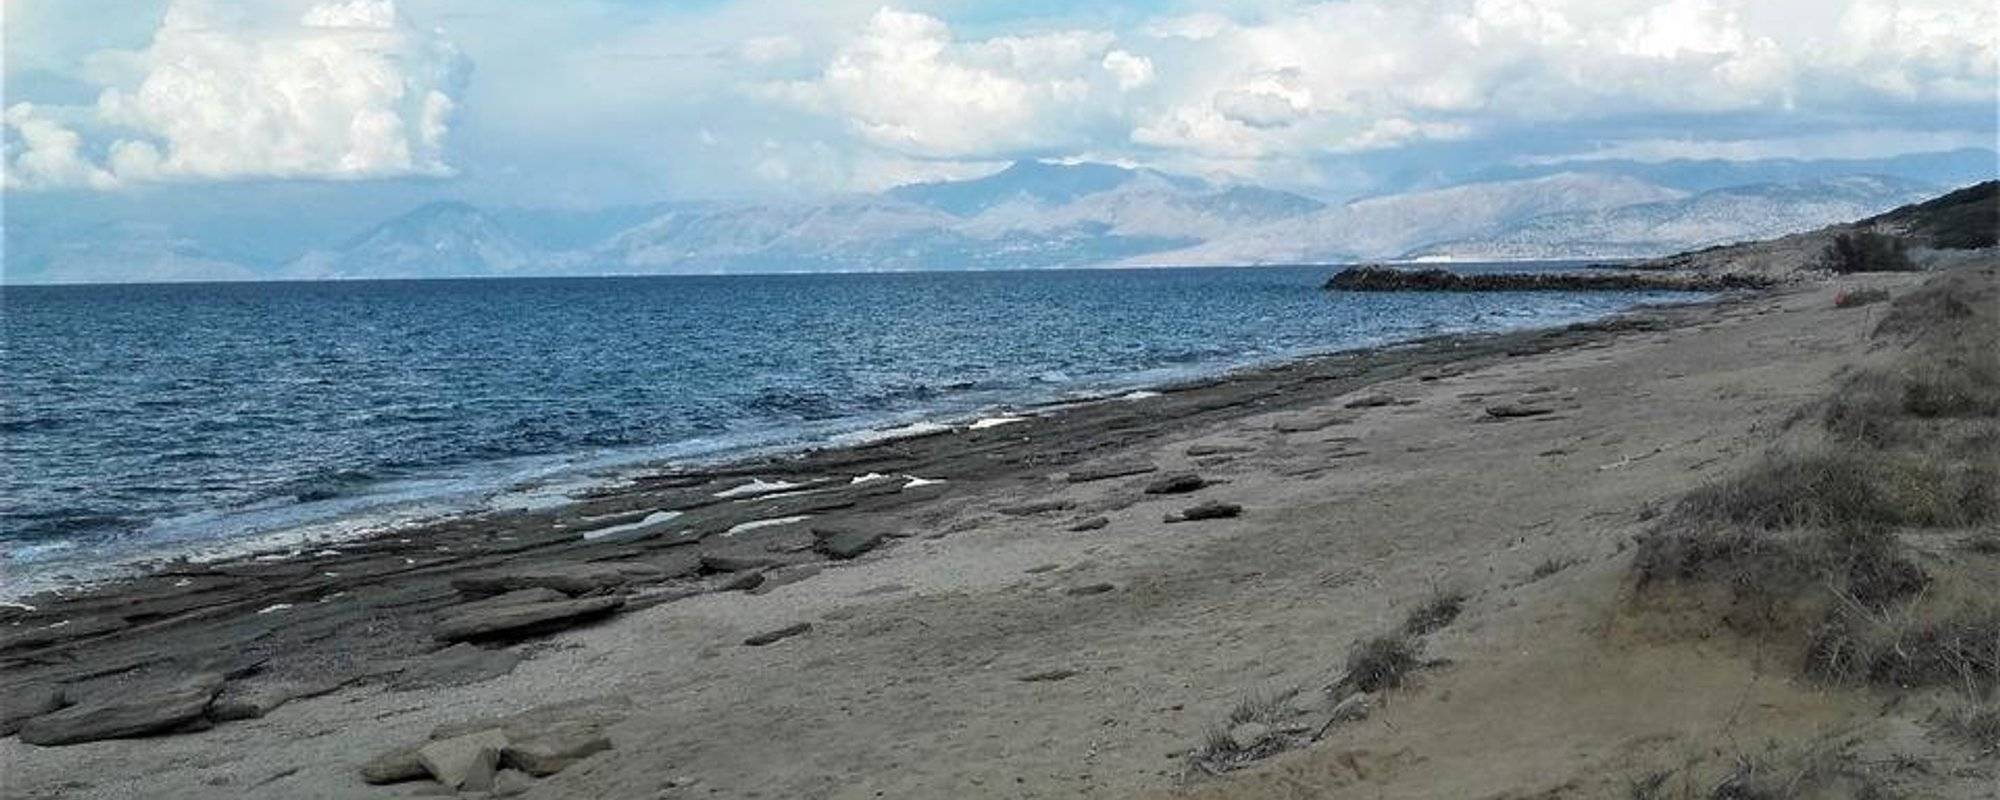 Plaża "Almiros" na wyspie Korfu.